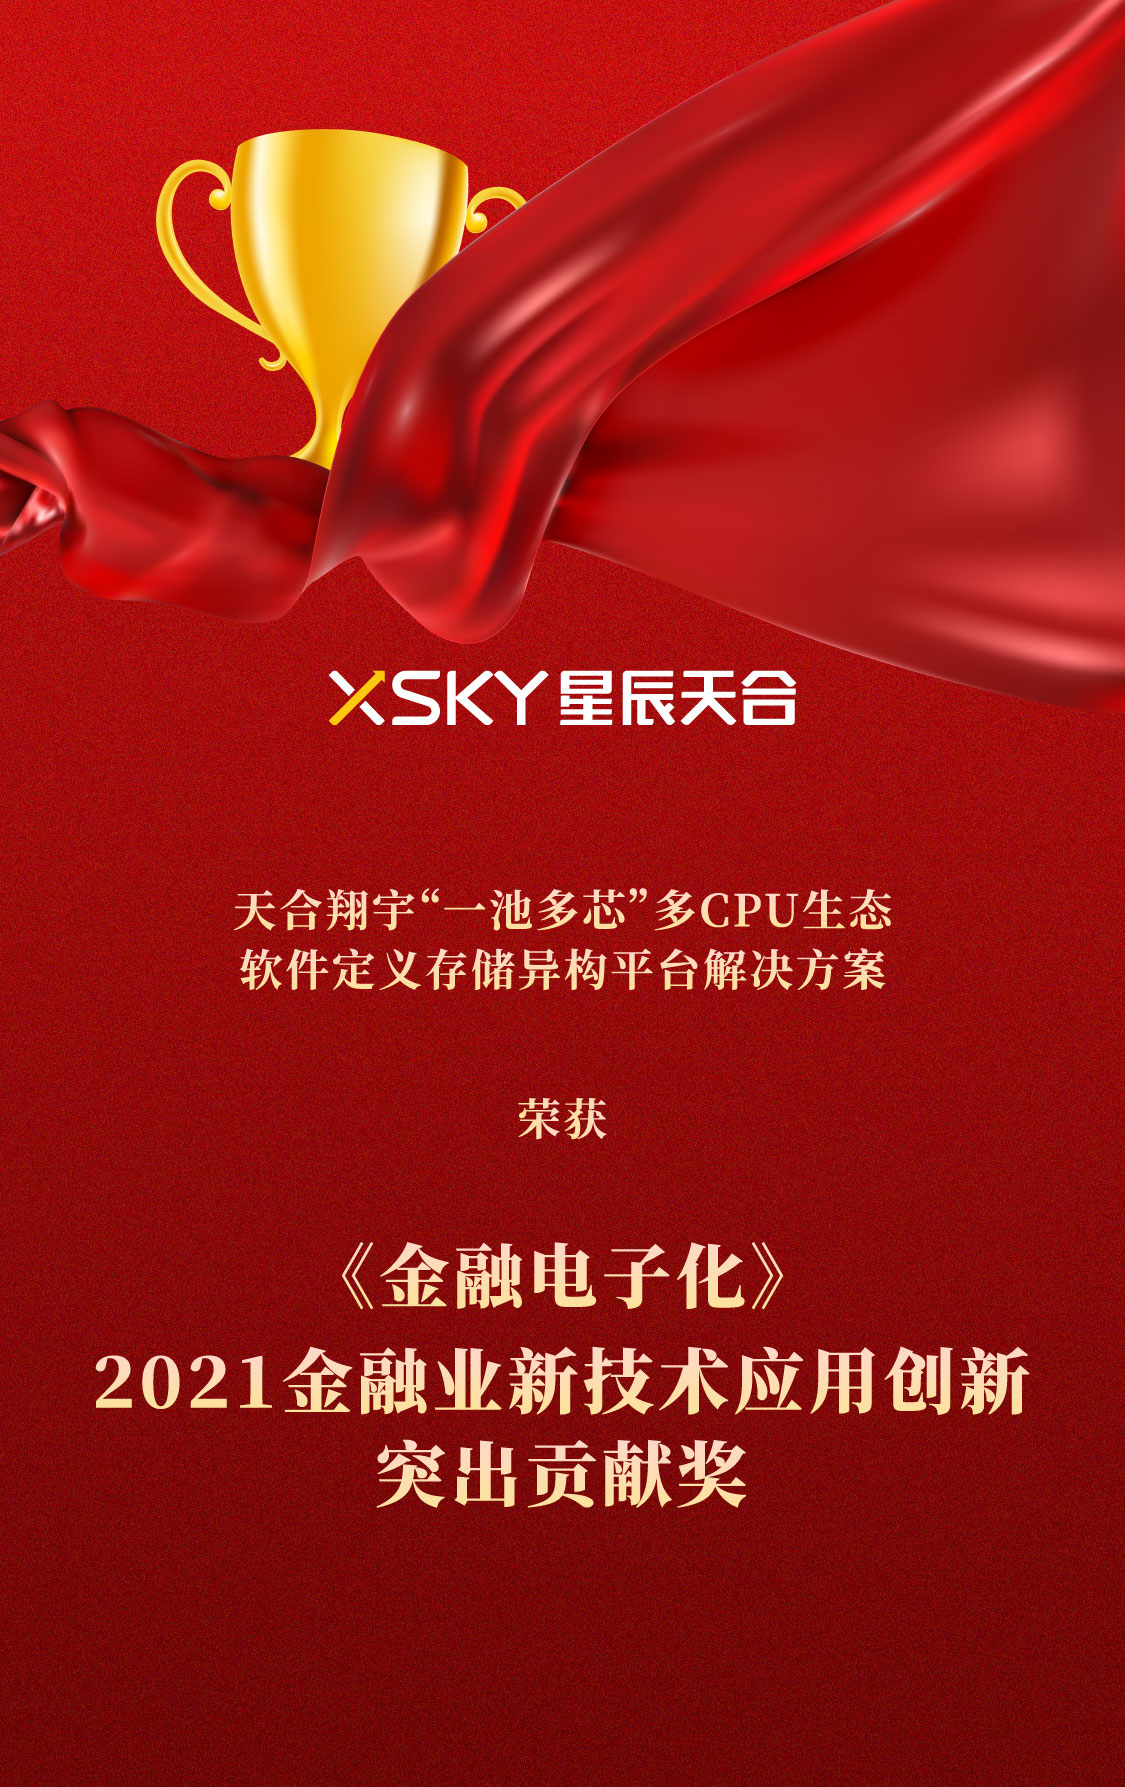 XSKY星辰天合问鼎《金融电子化》2021金融业新技术应用创新突出贡献奖